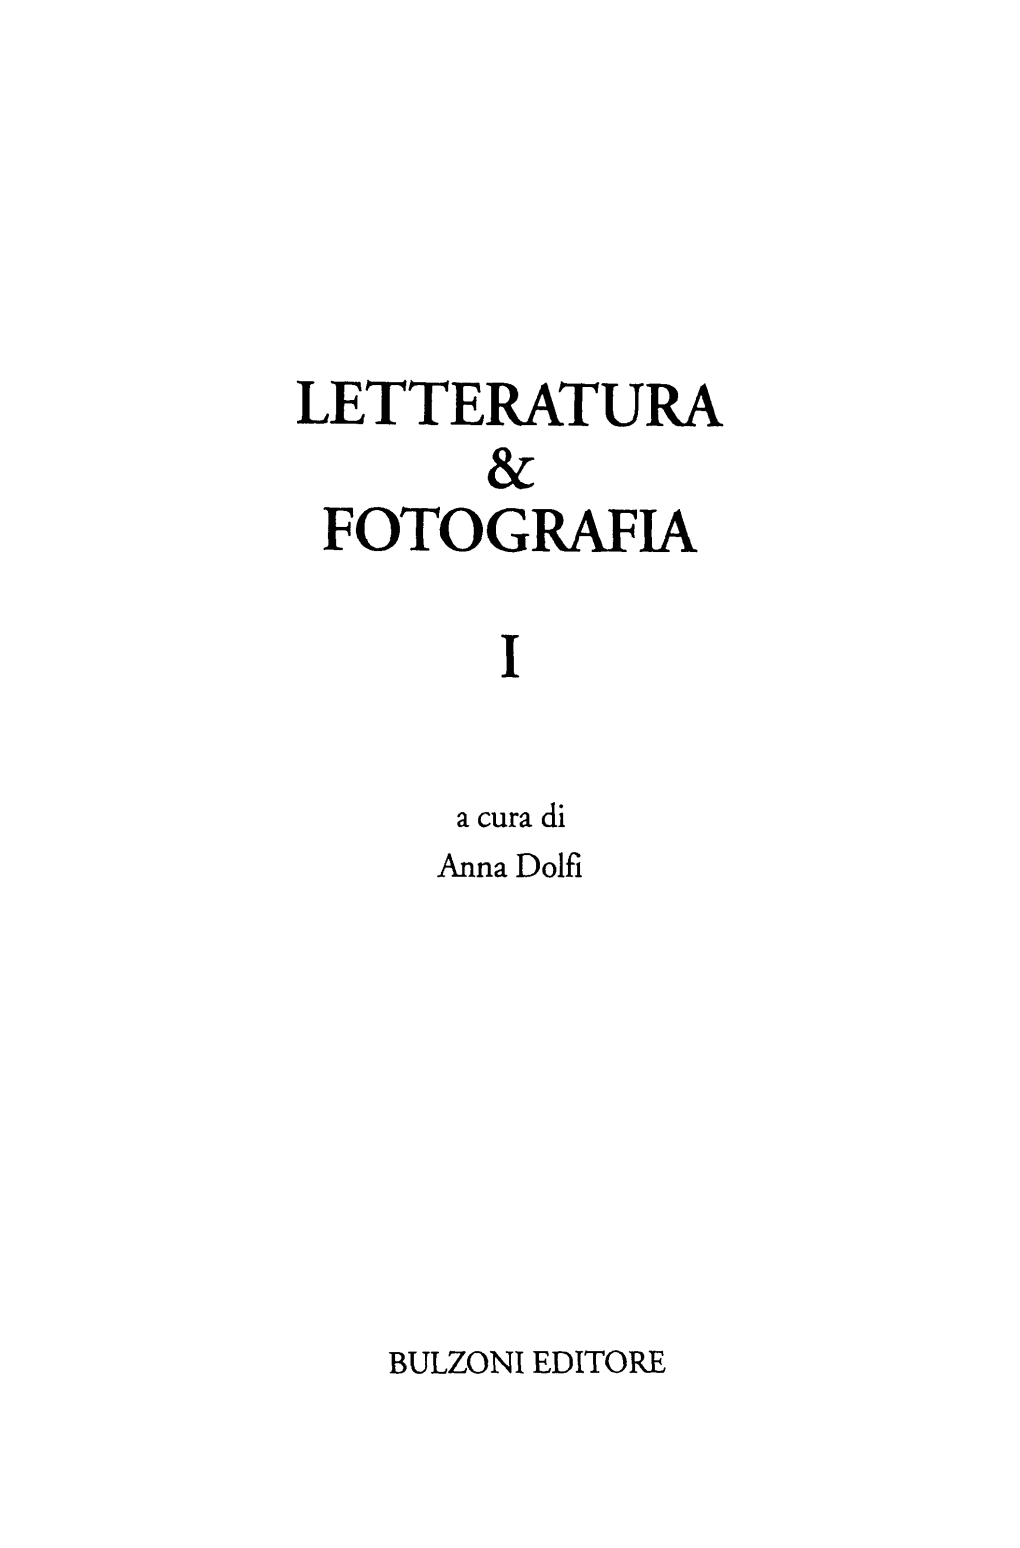 Letteratura & Fotografia